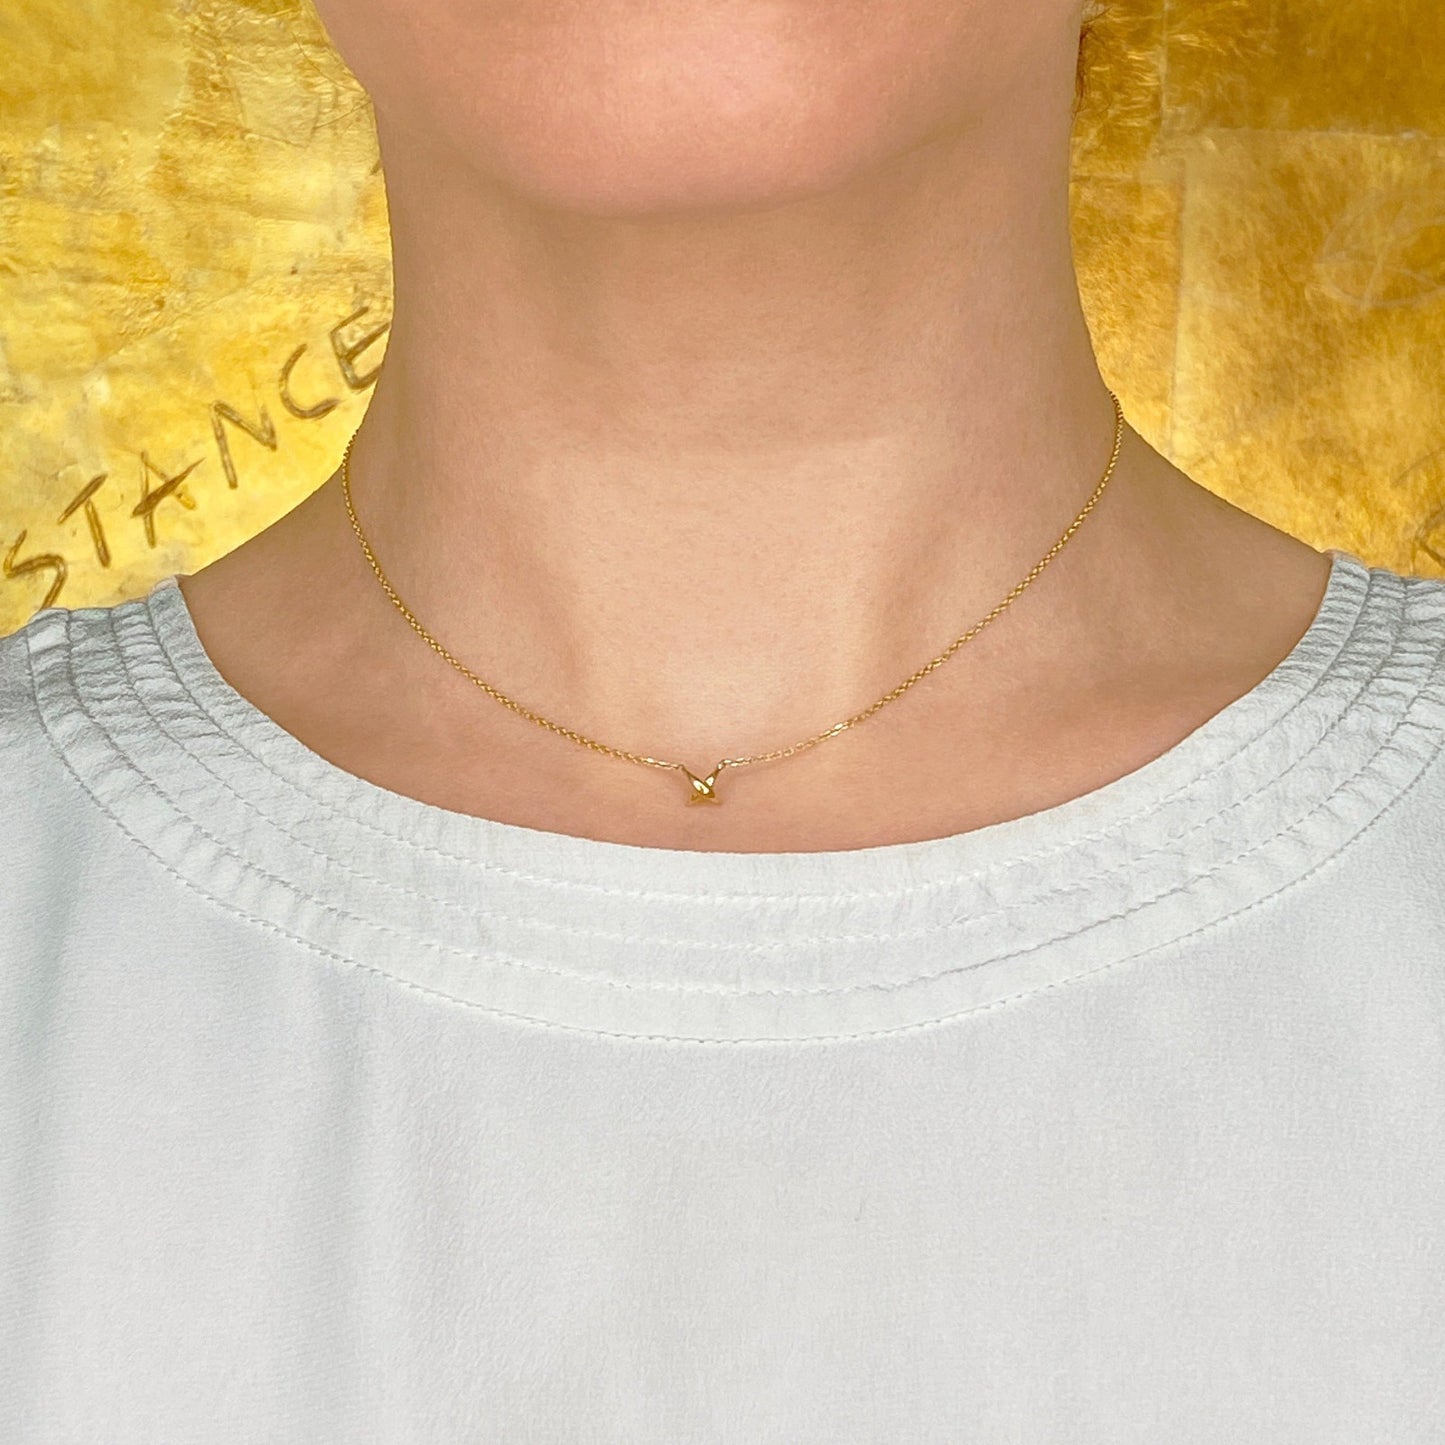 14k gold Stitch Necklace styled on a neck